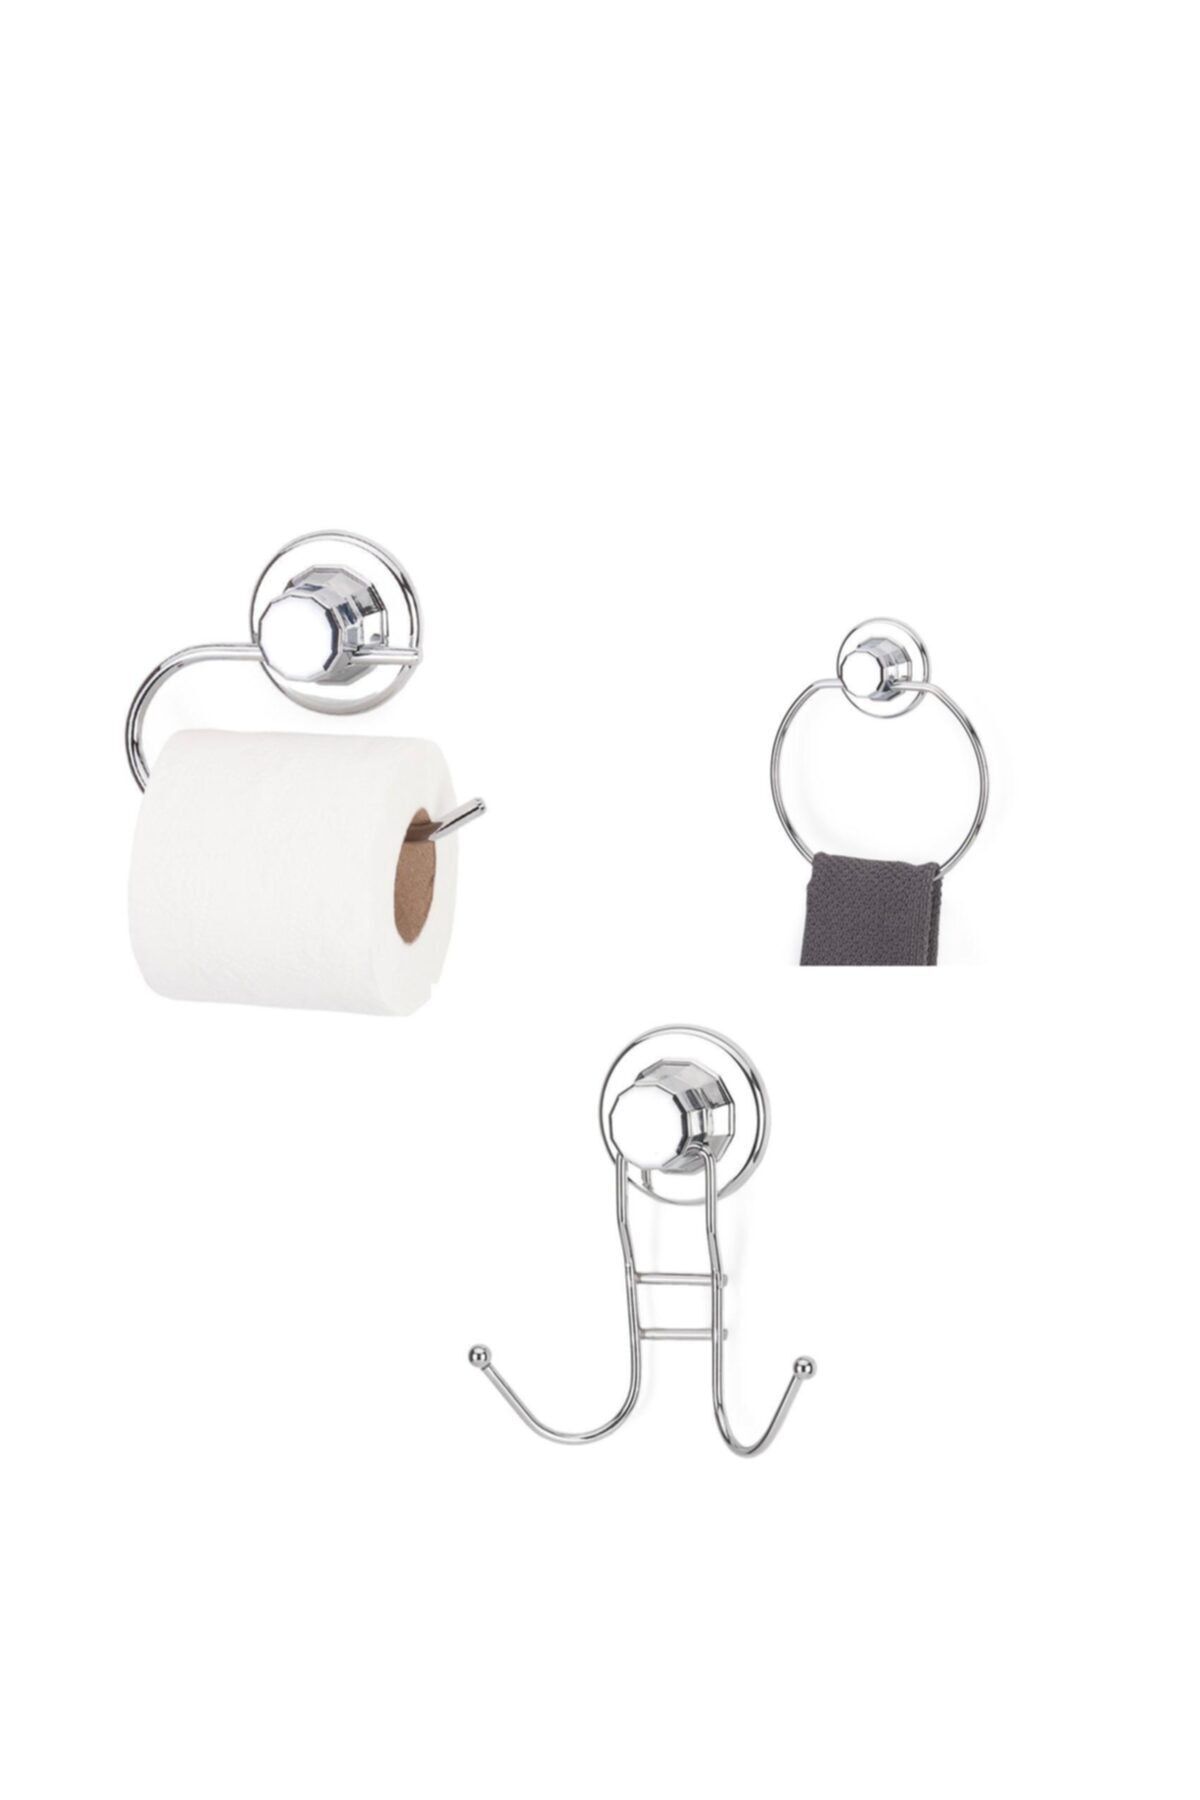 Evistro Vakumlu Banyo Aksesuarı 3 Lü Set Havluluk + Tuvalet Kağıtlıgı